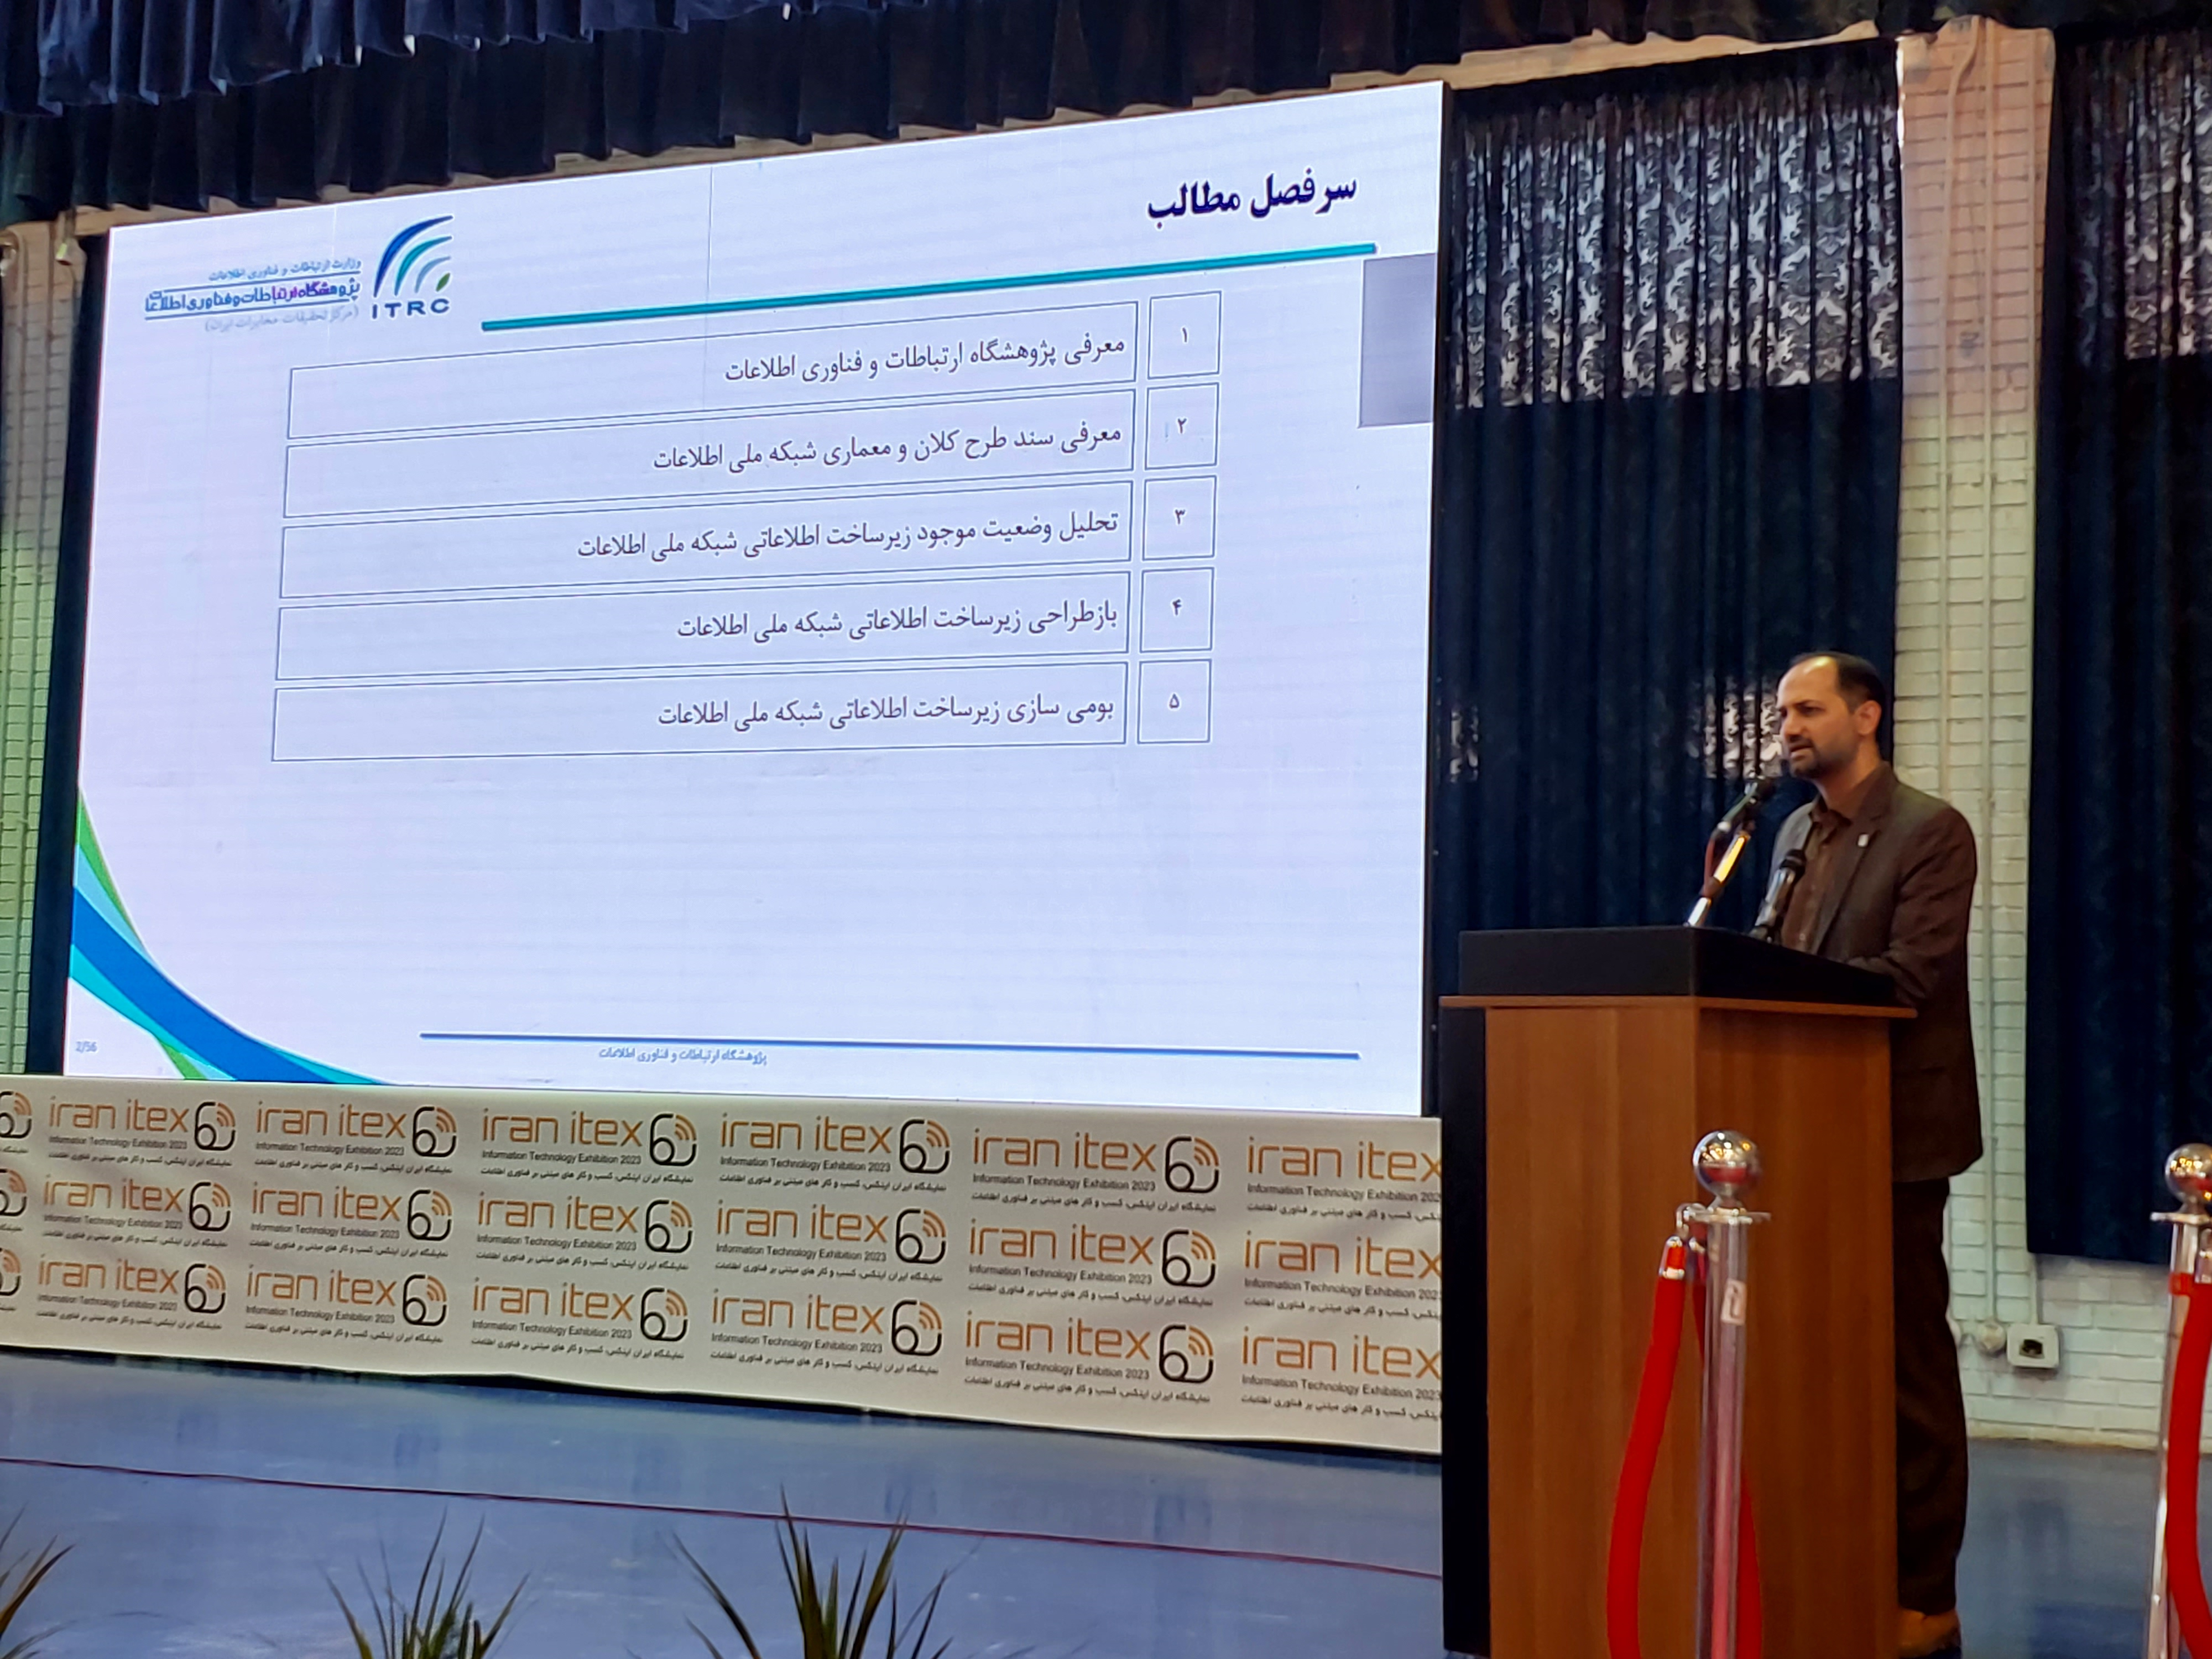 دومین نمایشگاه ایران آیتکس به میزبانی دانشگاه شریف گشایش یافت